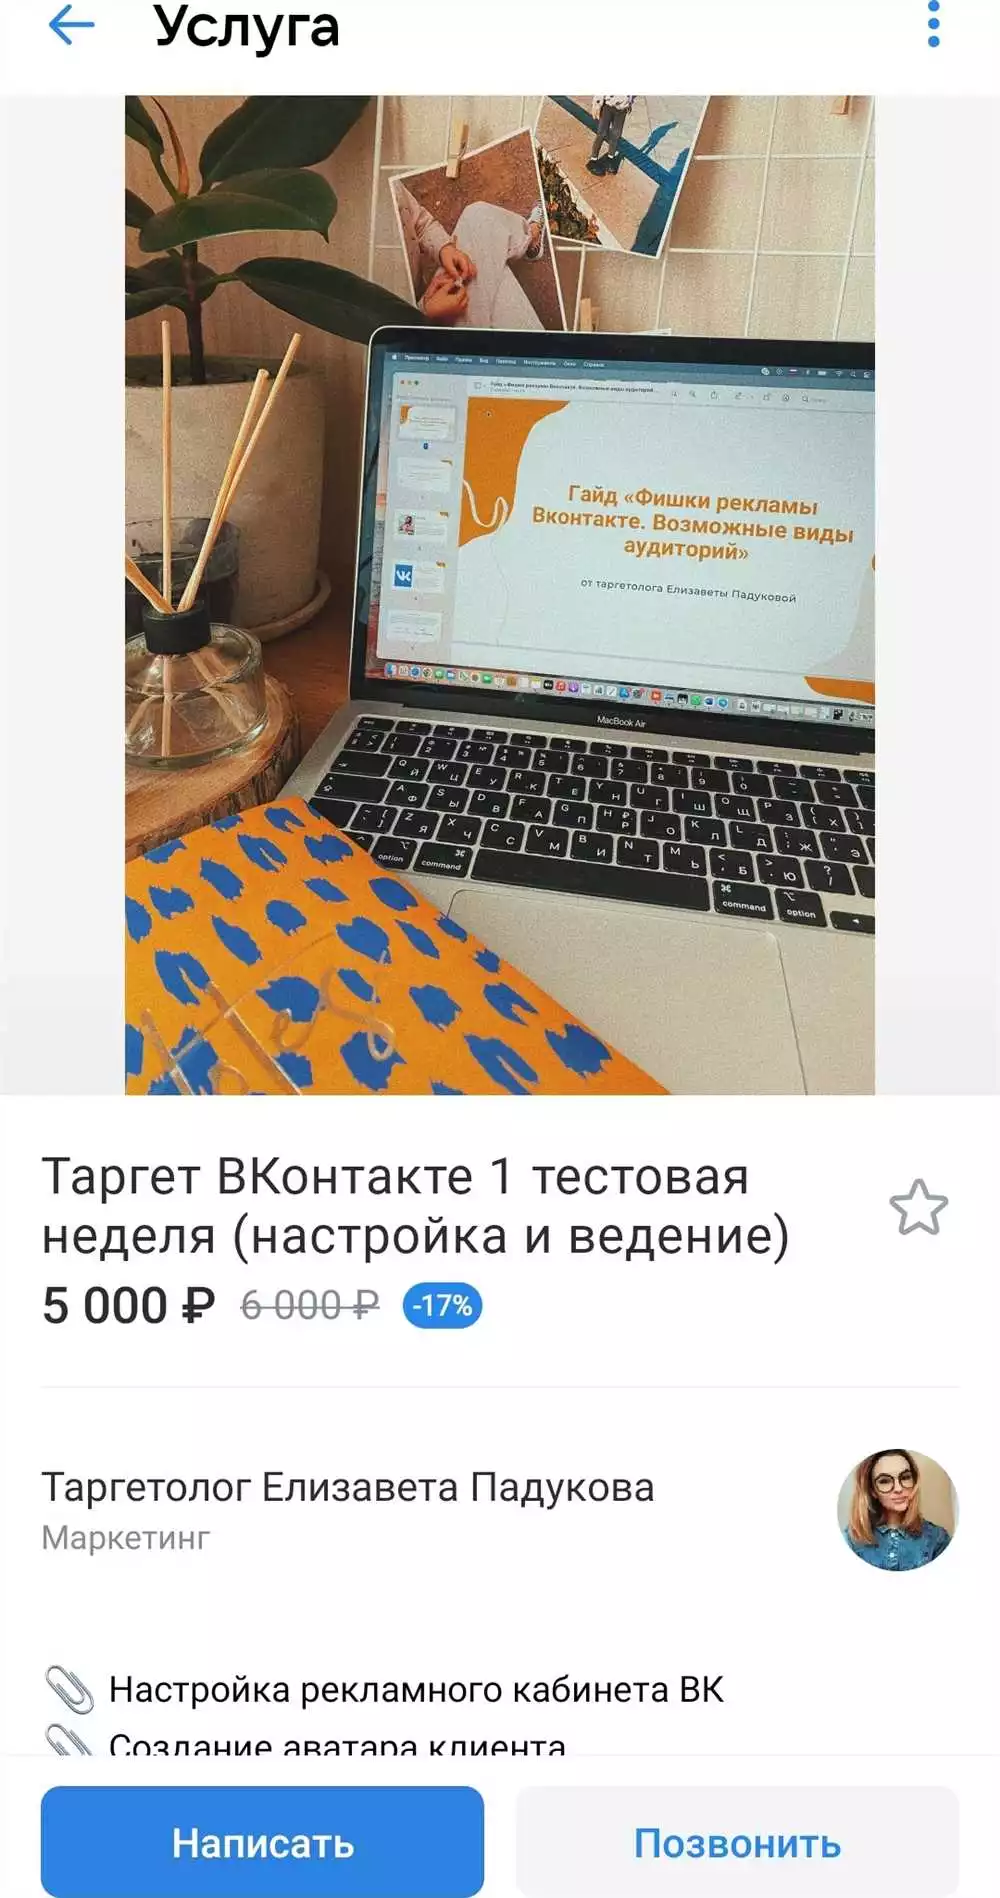 Стоимость Smm Продвижения В Vkontakte: Актуальные Цены И Преимущества